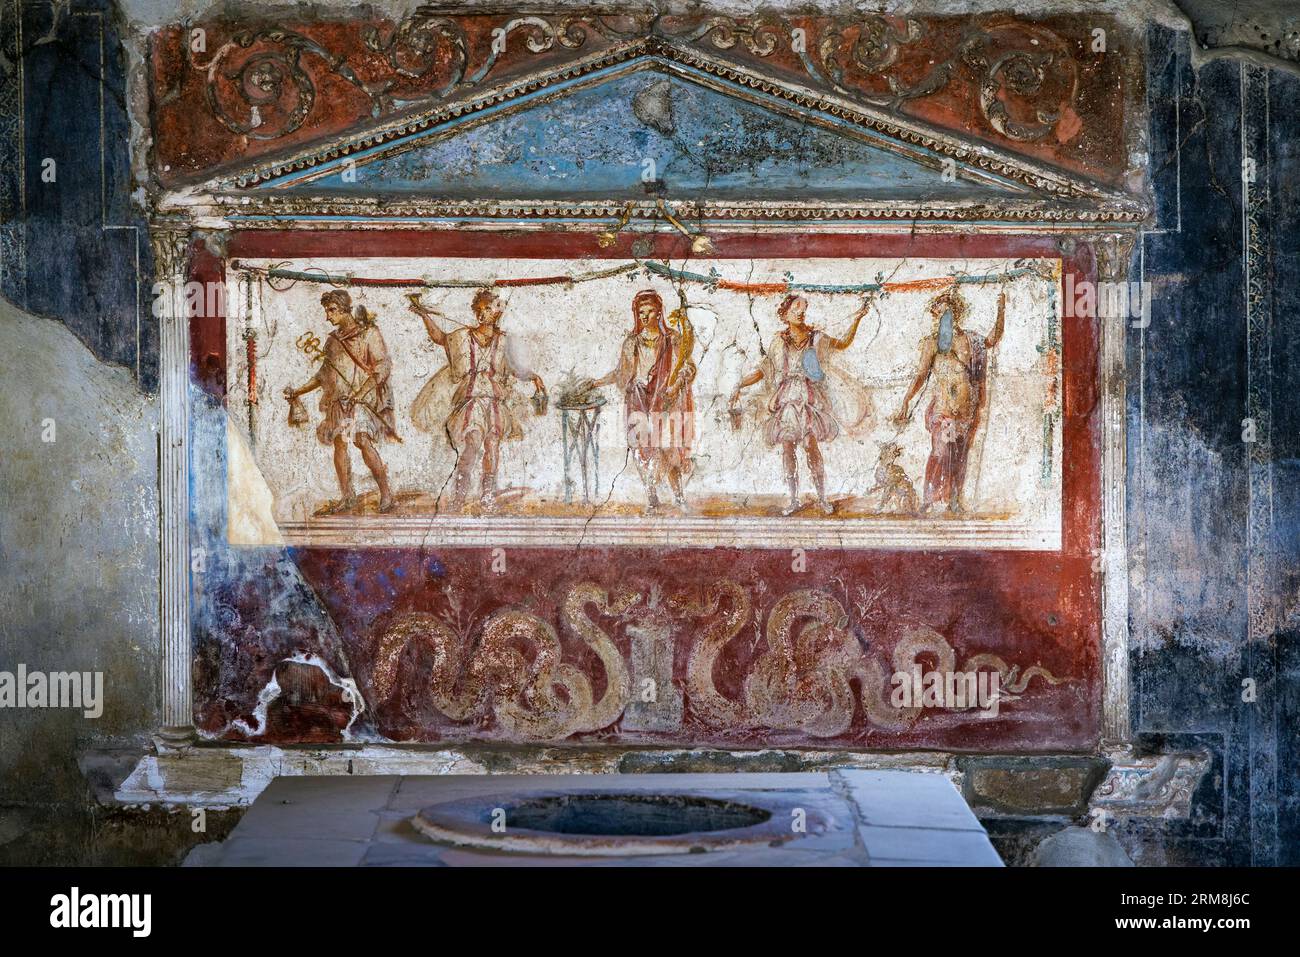 Sito archeologico di Pompei, Campania, Italia. Casa e Thermopolium di Vetutius Placidus. Un Thermopolium era un posto che vendeva piatti caldi pronti Foto Stock